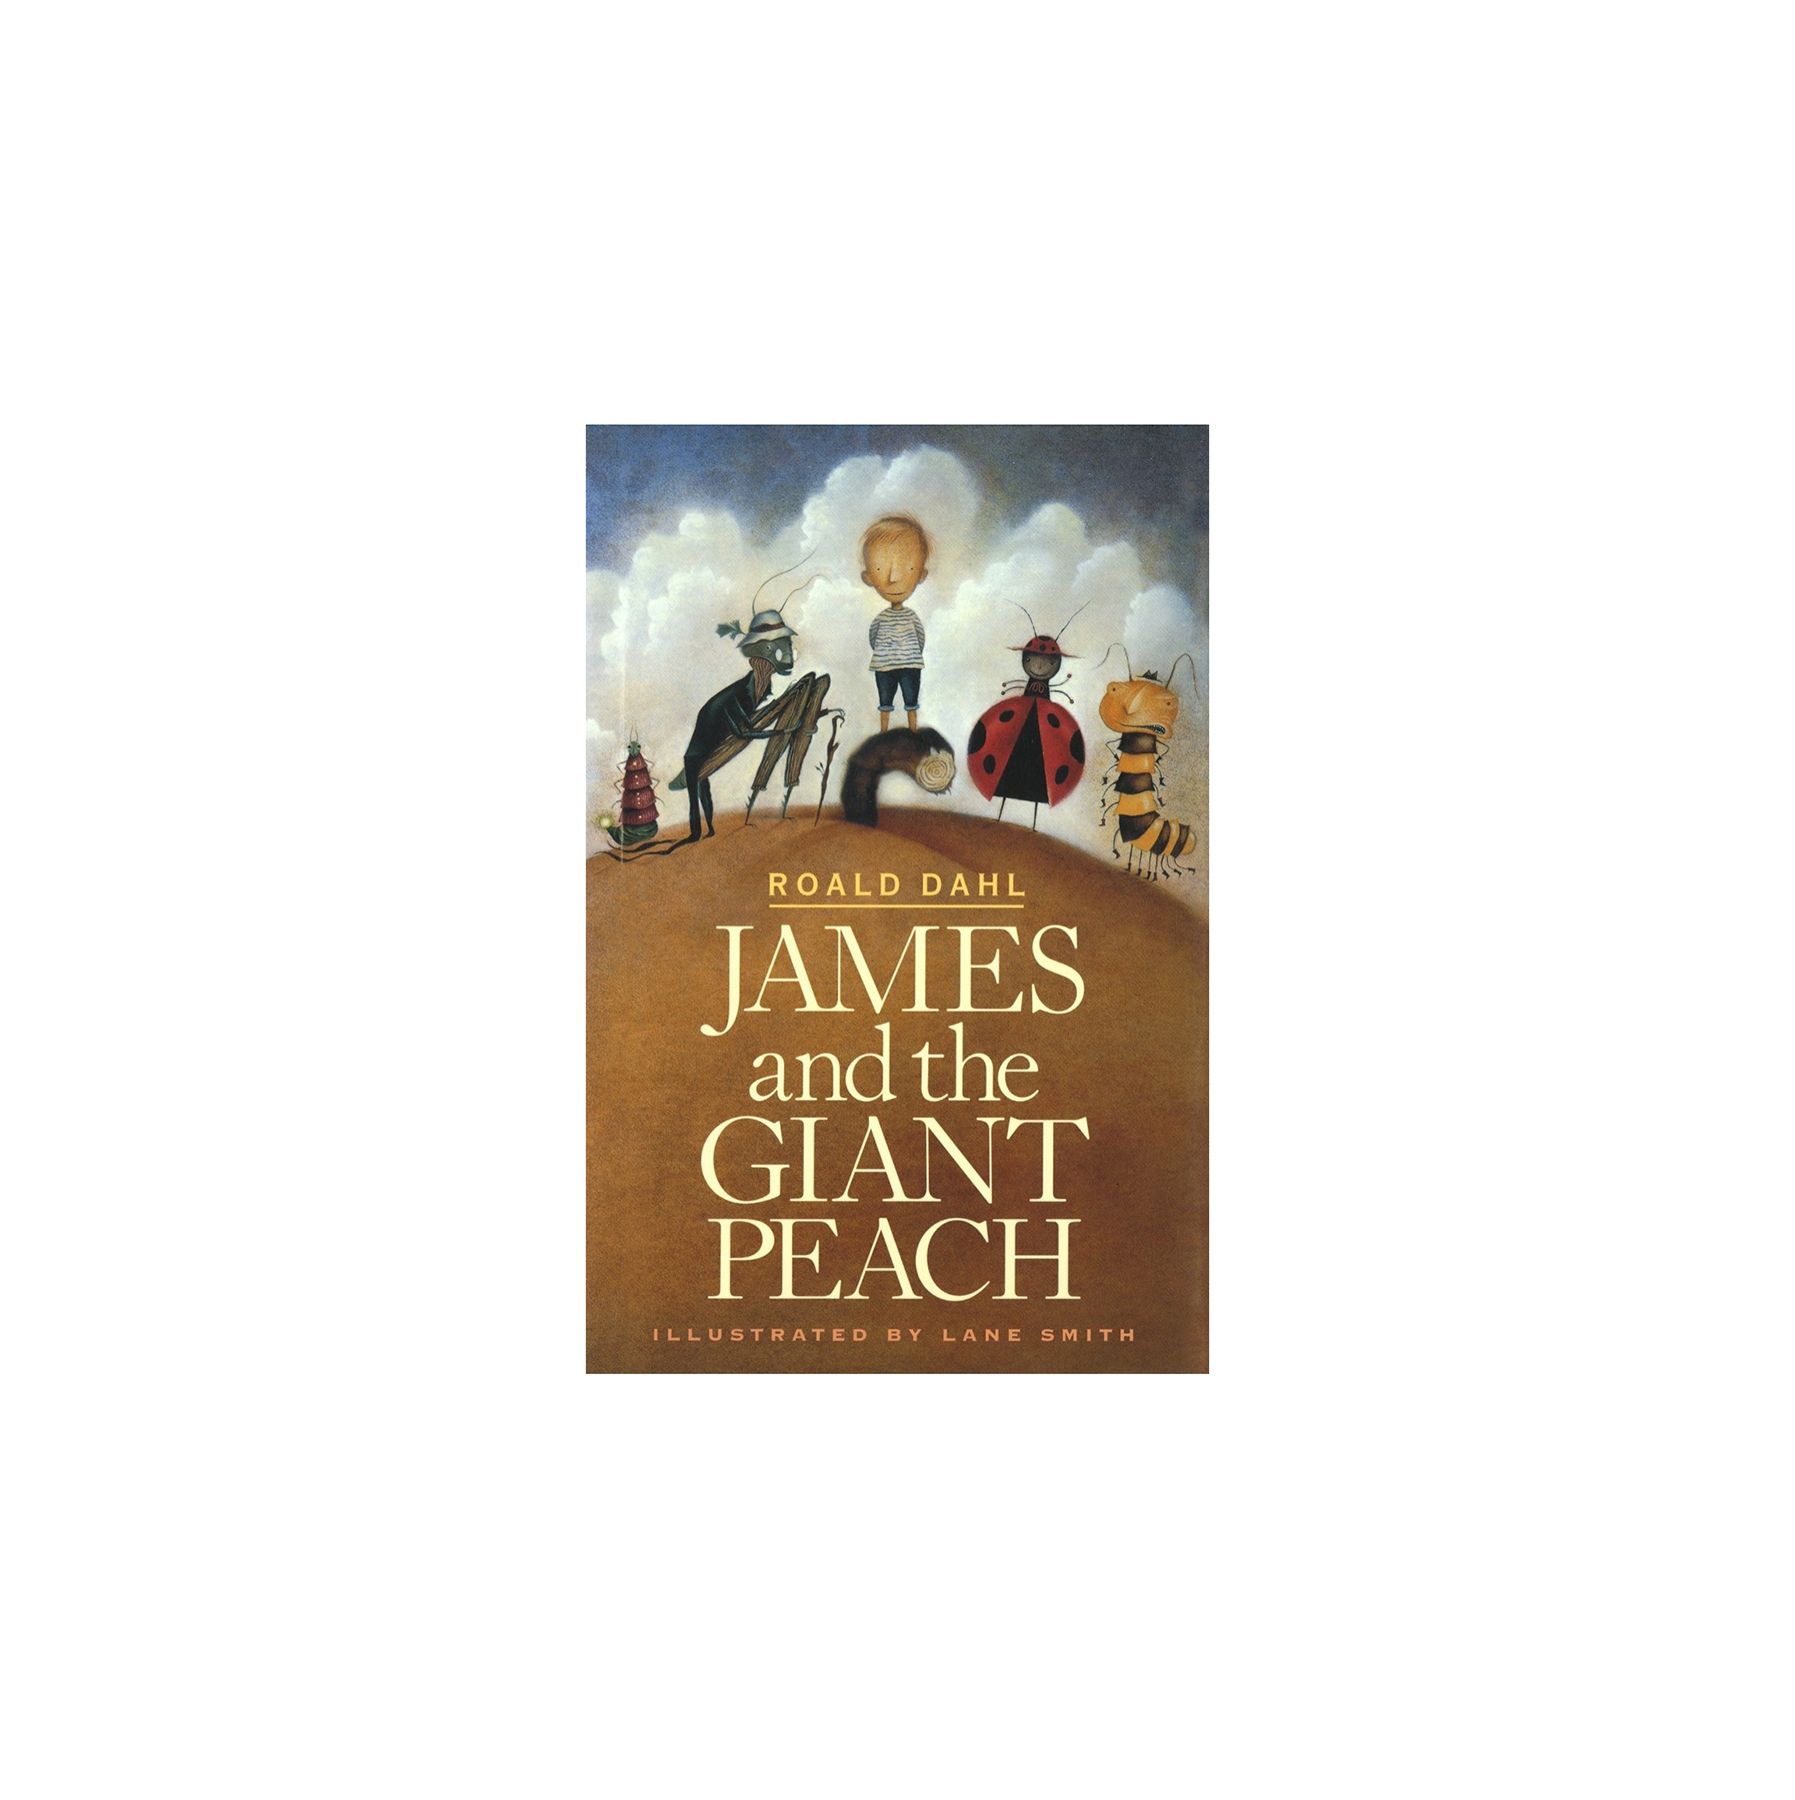 James in velikanska breskev, avtor Roald Dahl